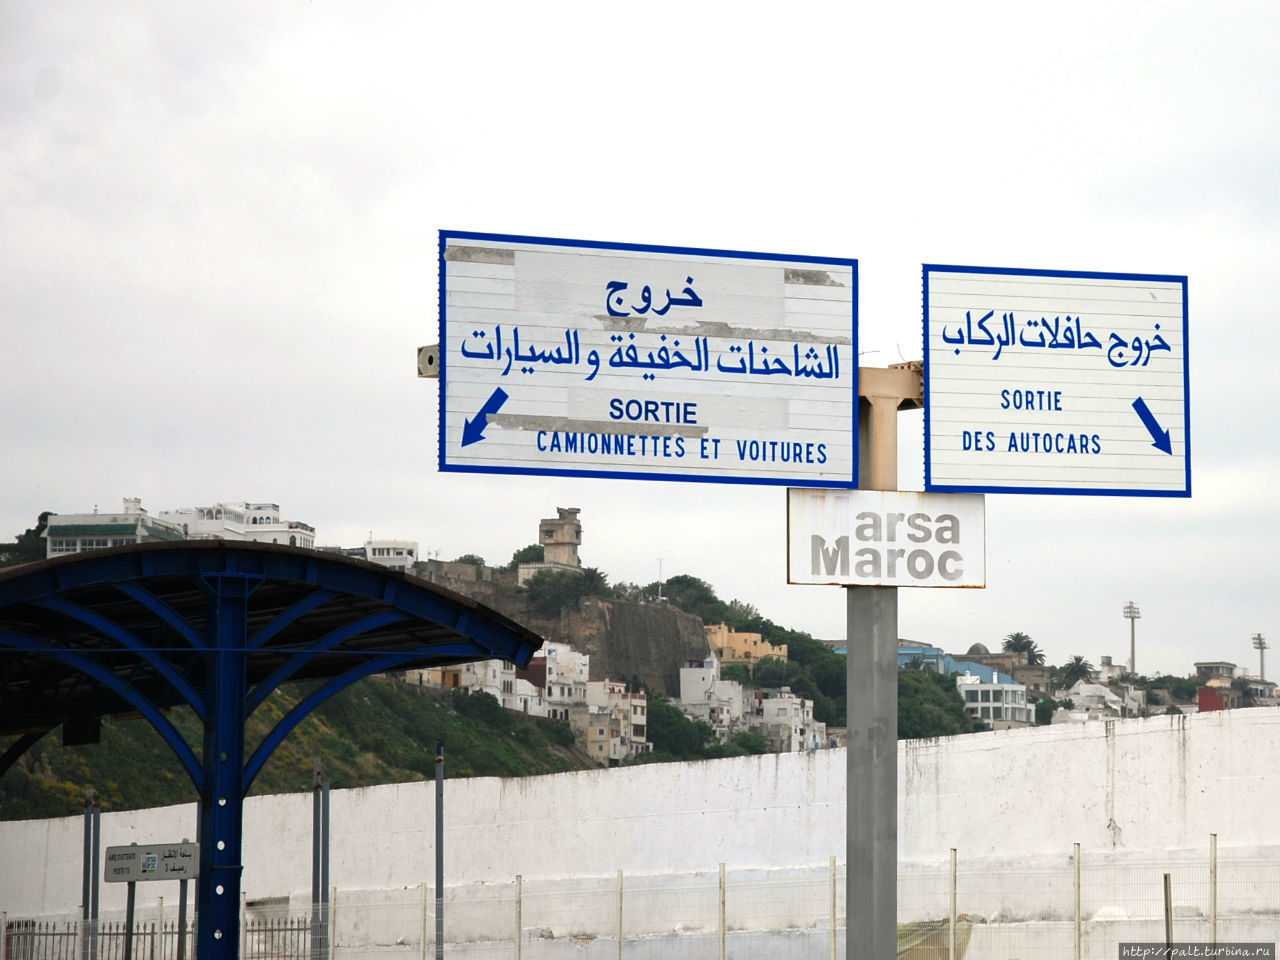 Не буду хвастать, что разобрались с арабским, но французский до нас дошел: налево выход к автомобилям (и, интернет подсказал потом, к микроавтобусам), направо выход к автобусам (нас туда и повели) Танжер, Марокко